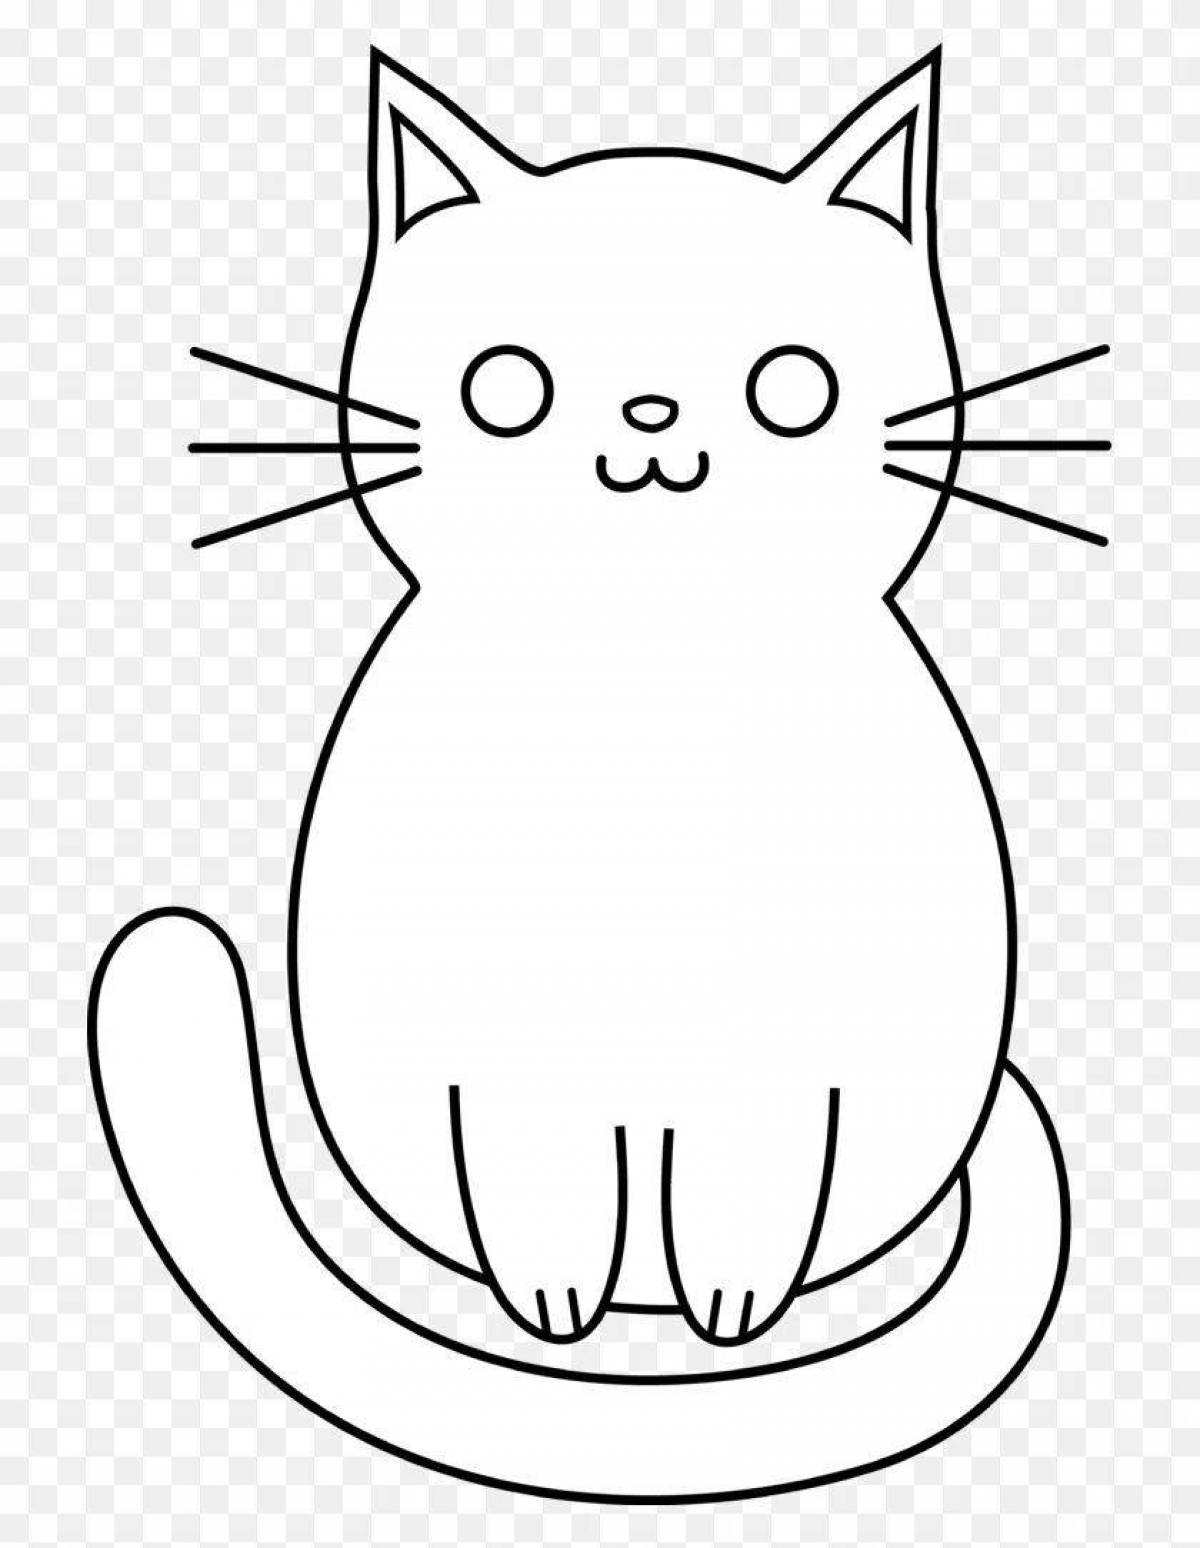 Calm coloring cat simple